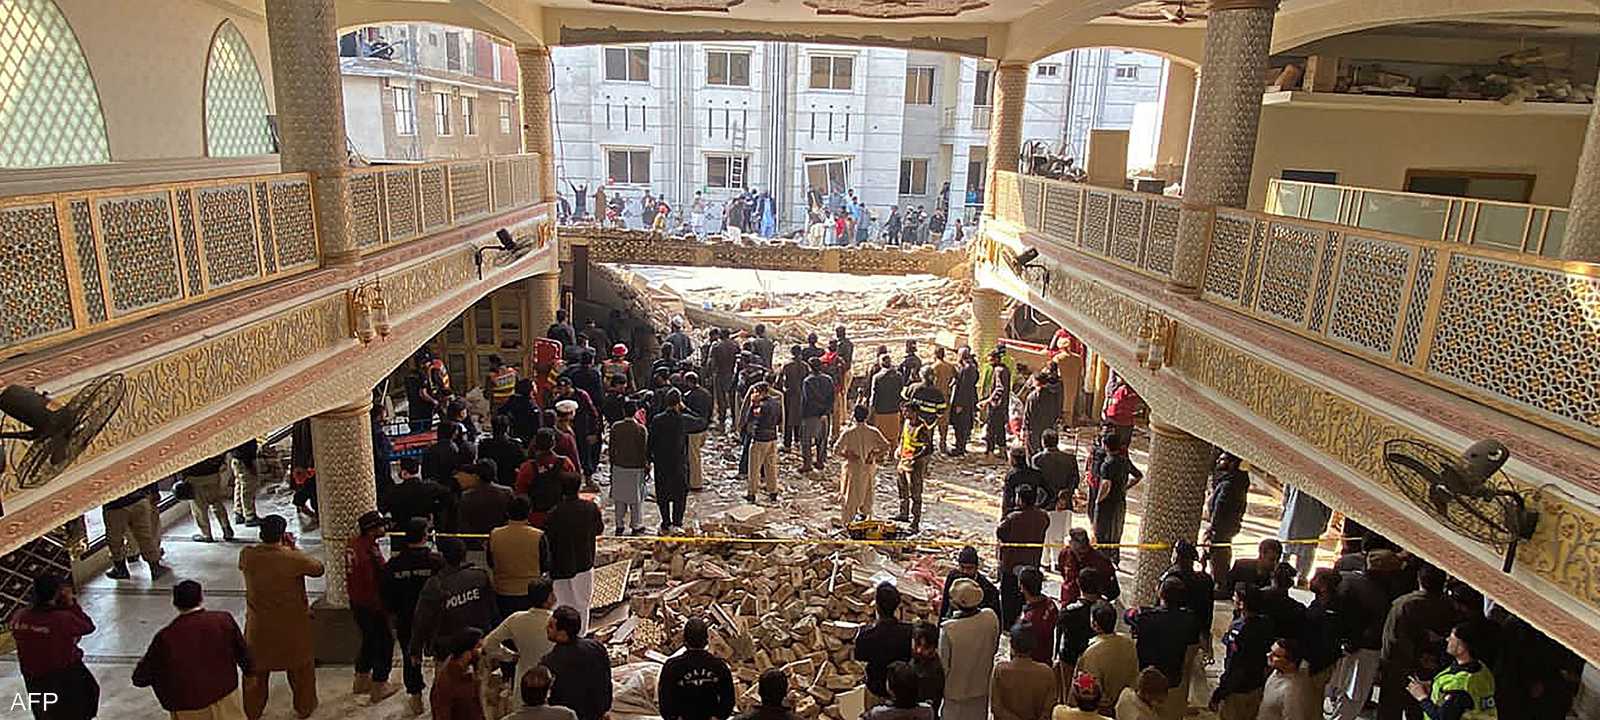 انهار جزء من المسجد جراء التفجير الانتحاري